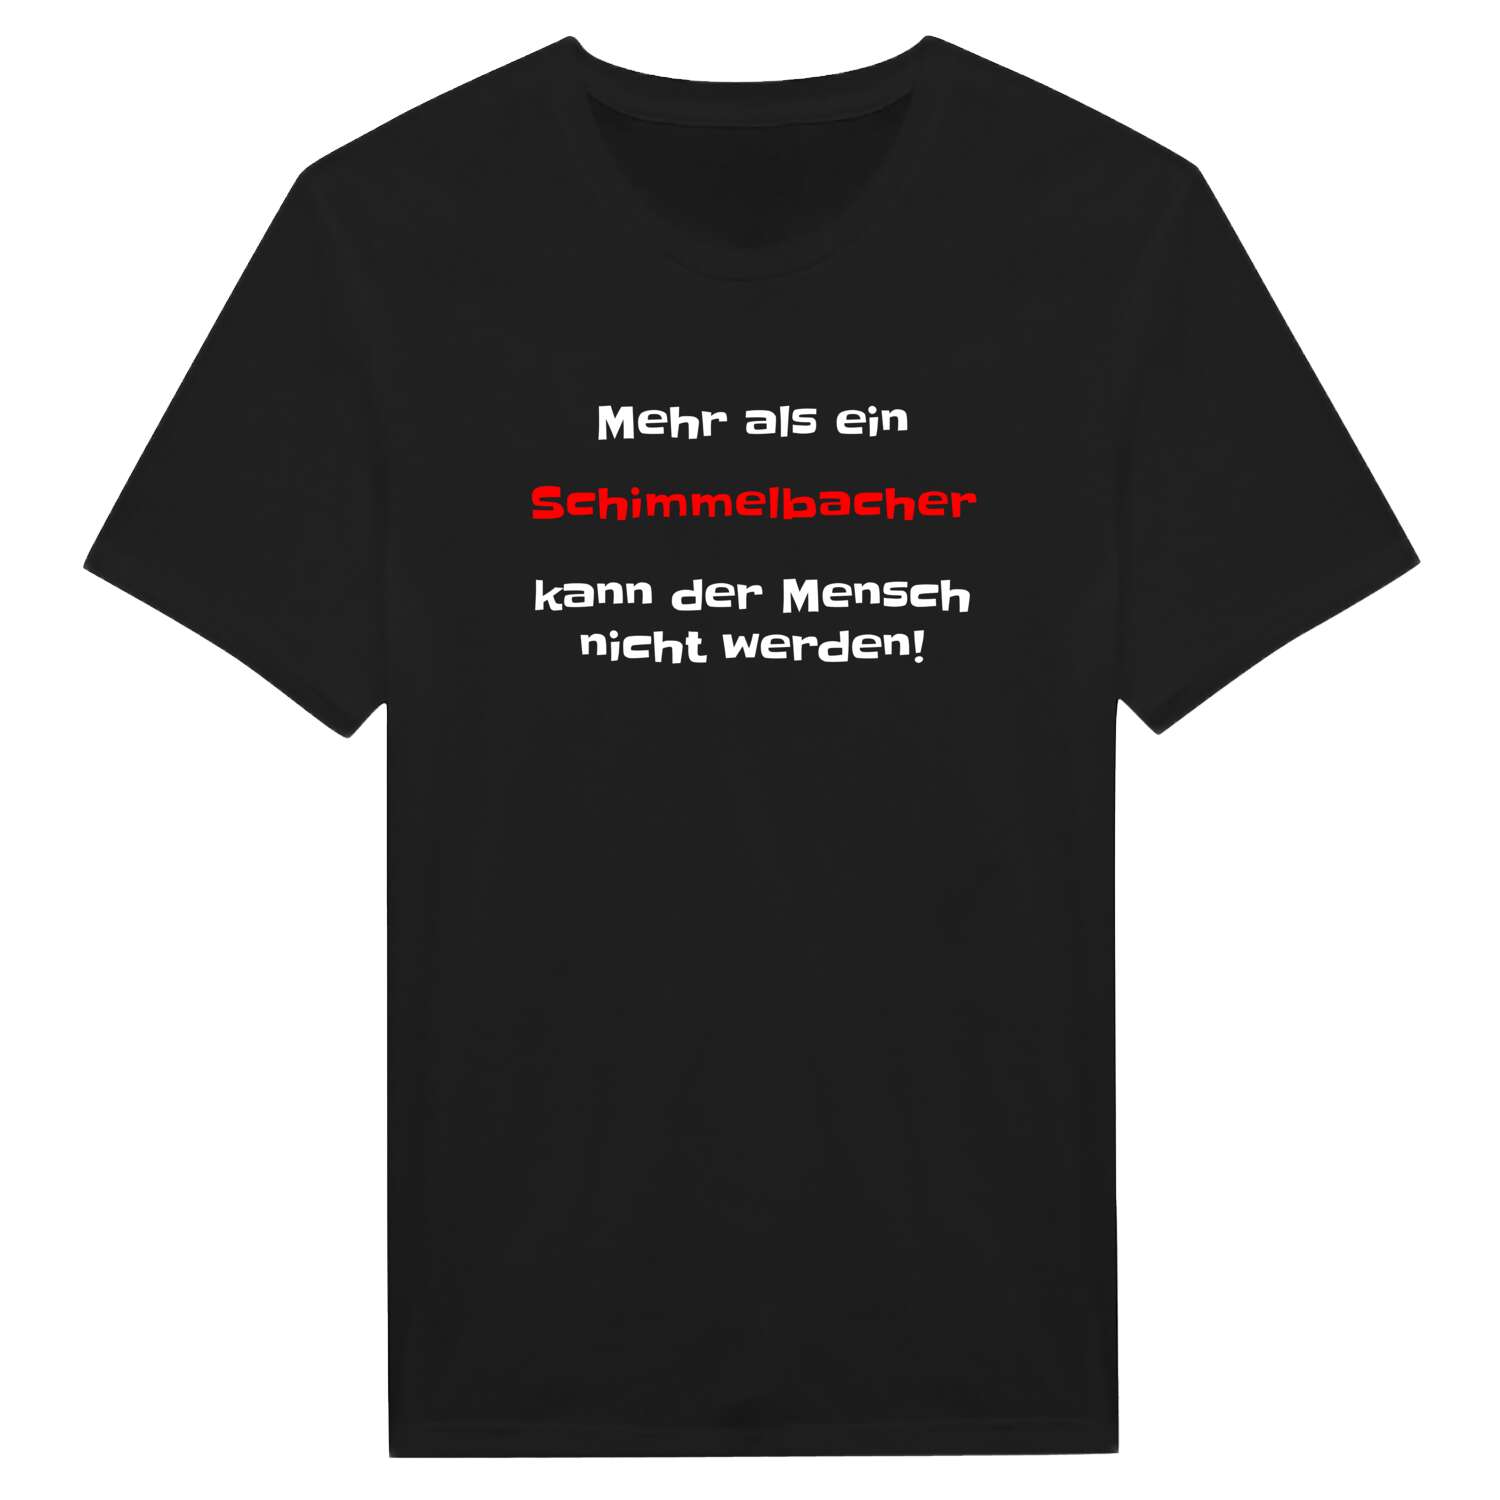 Schimmelbach T-Shirt »Mehr als ein«